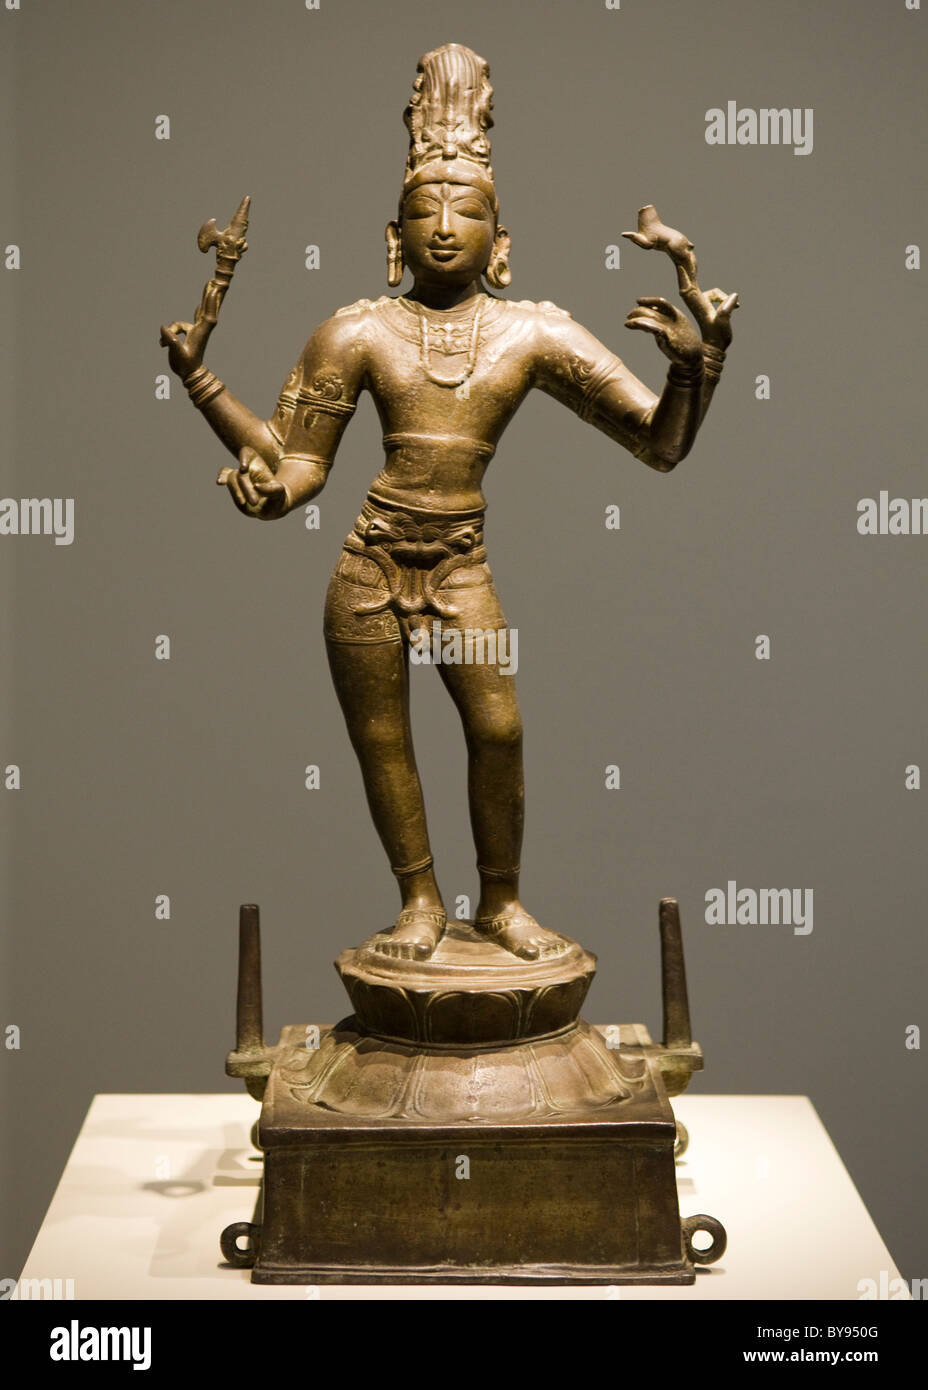 Bronzeskulptur von Shiva Vinadhara - Indien, ca / 950 (Chola Dynastie) Stockfoto